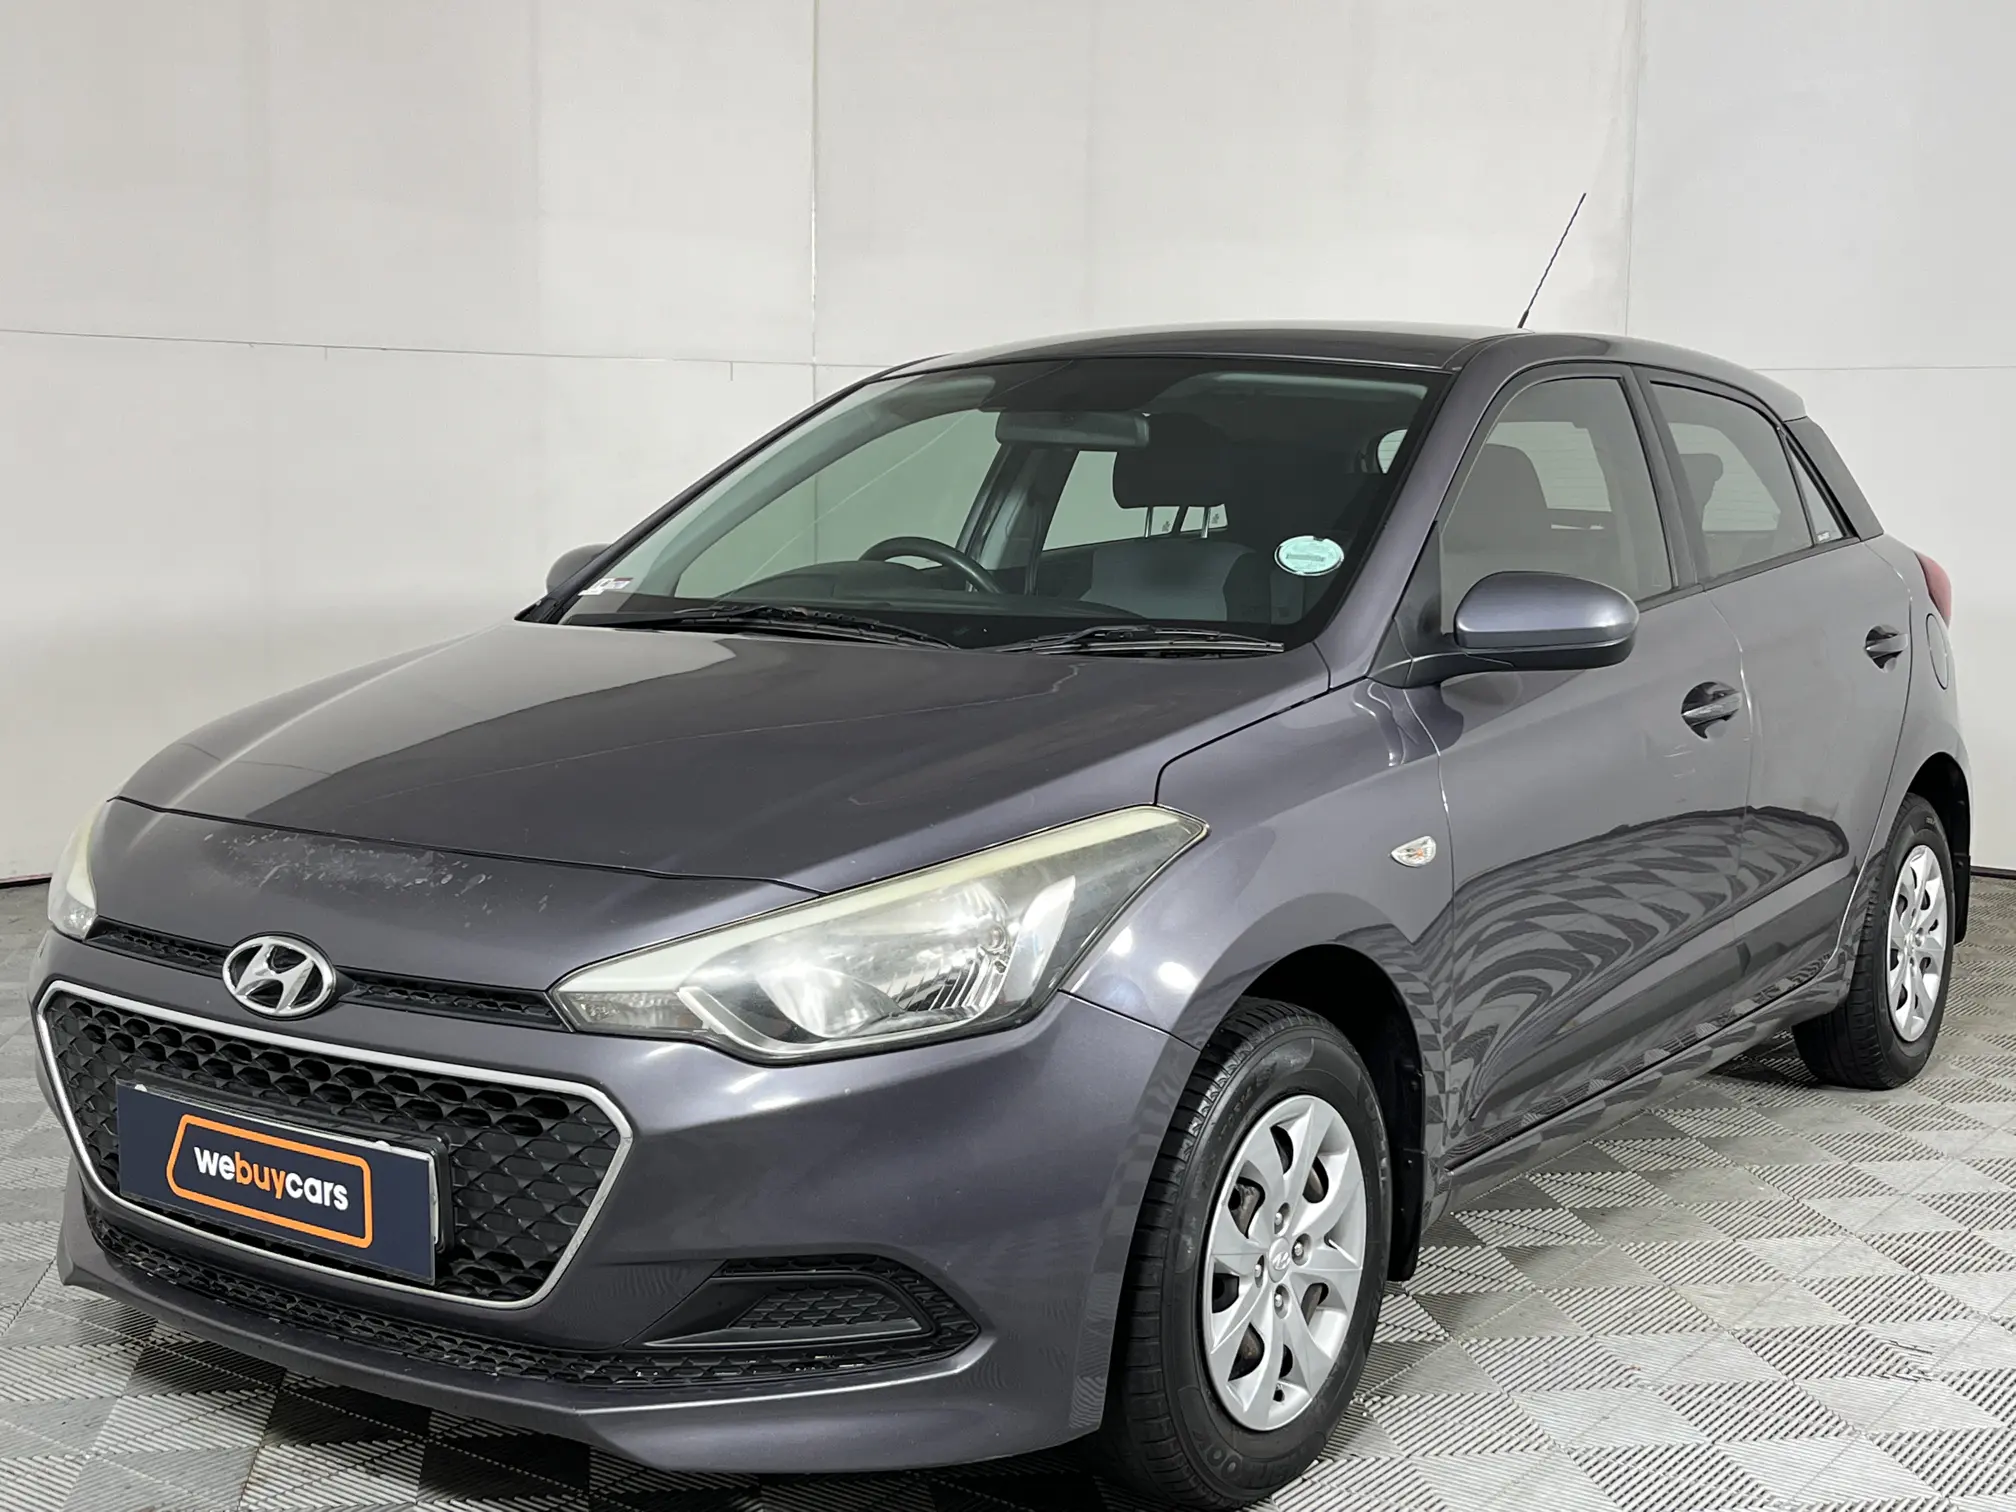 2015 Hyundai i20 1.2 Motion